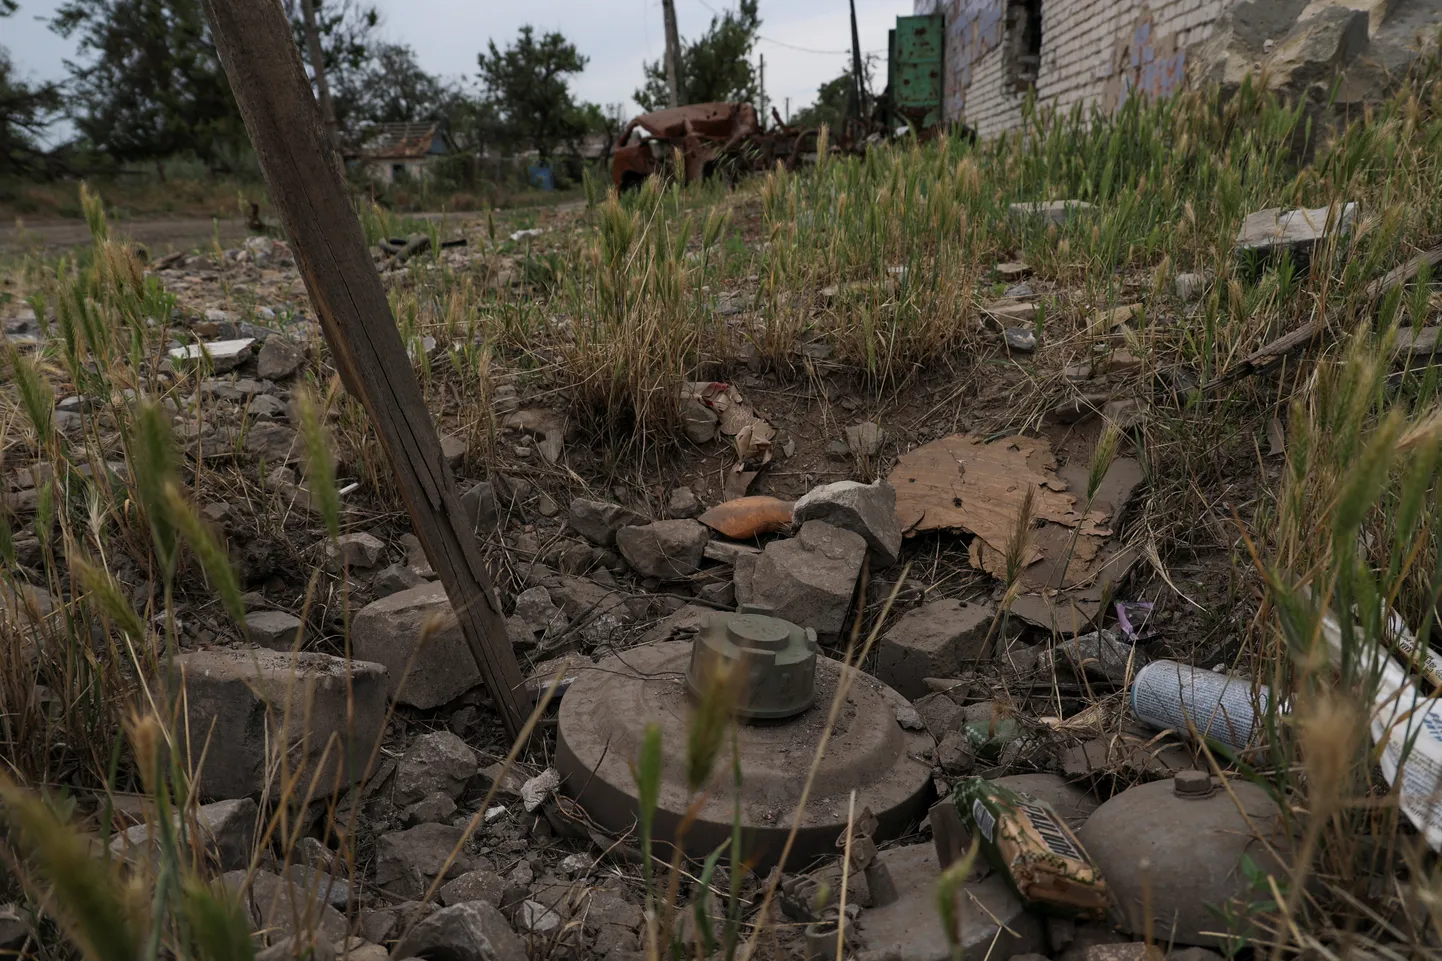 Tankitõrjemiin Donetski oblastis Neskutšne külas, mille Ukraina vabastas Venemaa okupatsiooni alt juuni algusnädalatel